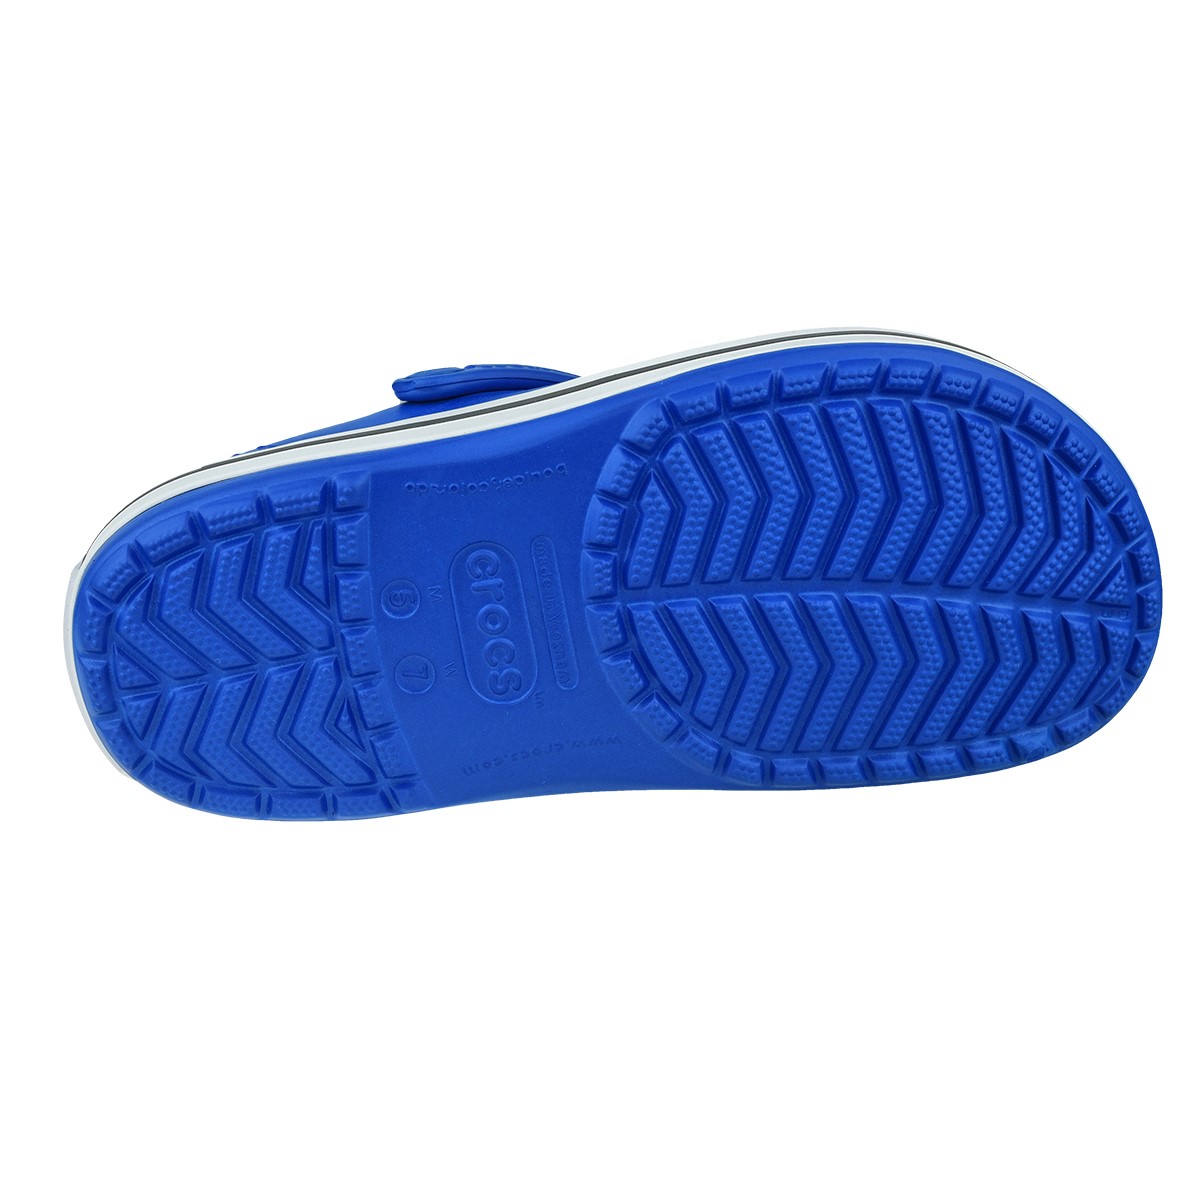 Crocs Unisex Sandalet 11016 Bright Cobalt/Charcoal